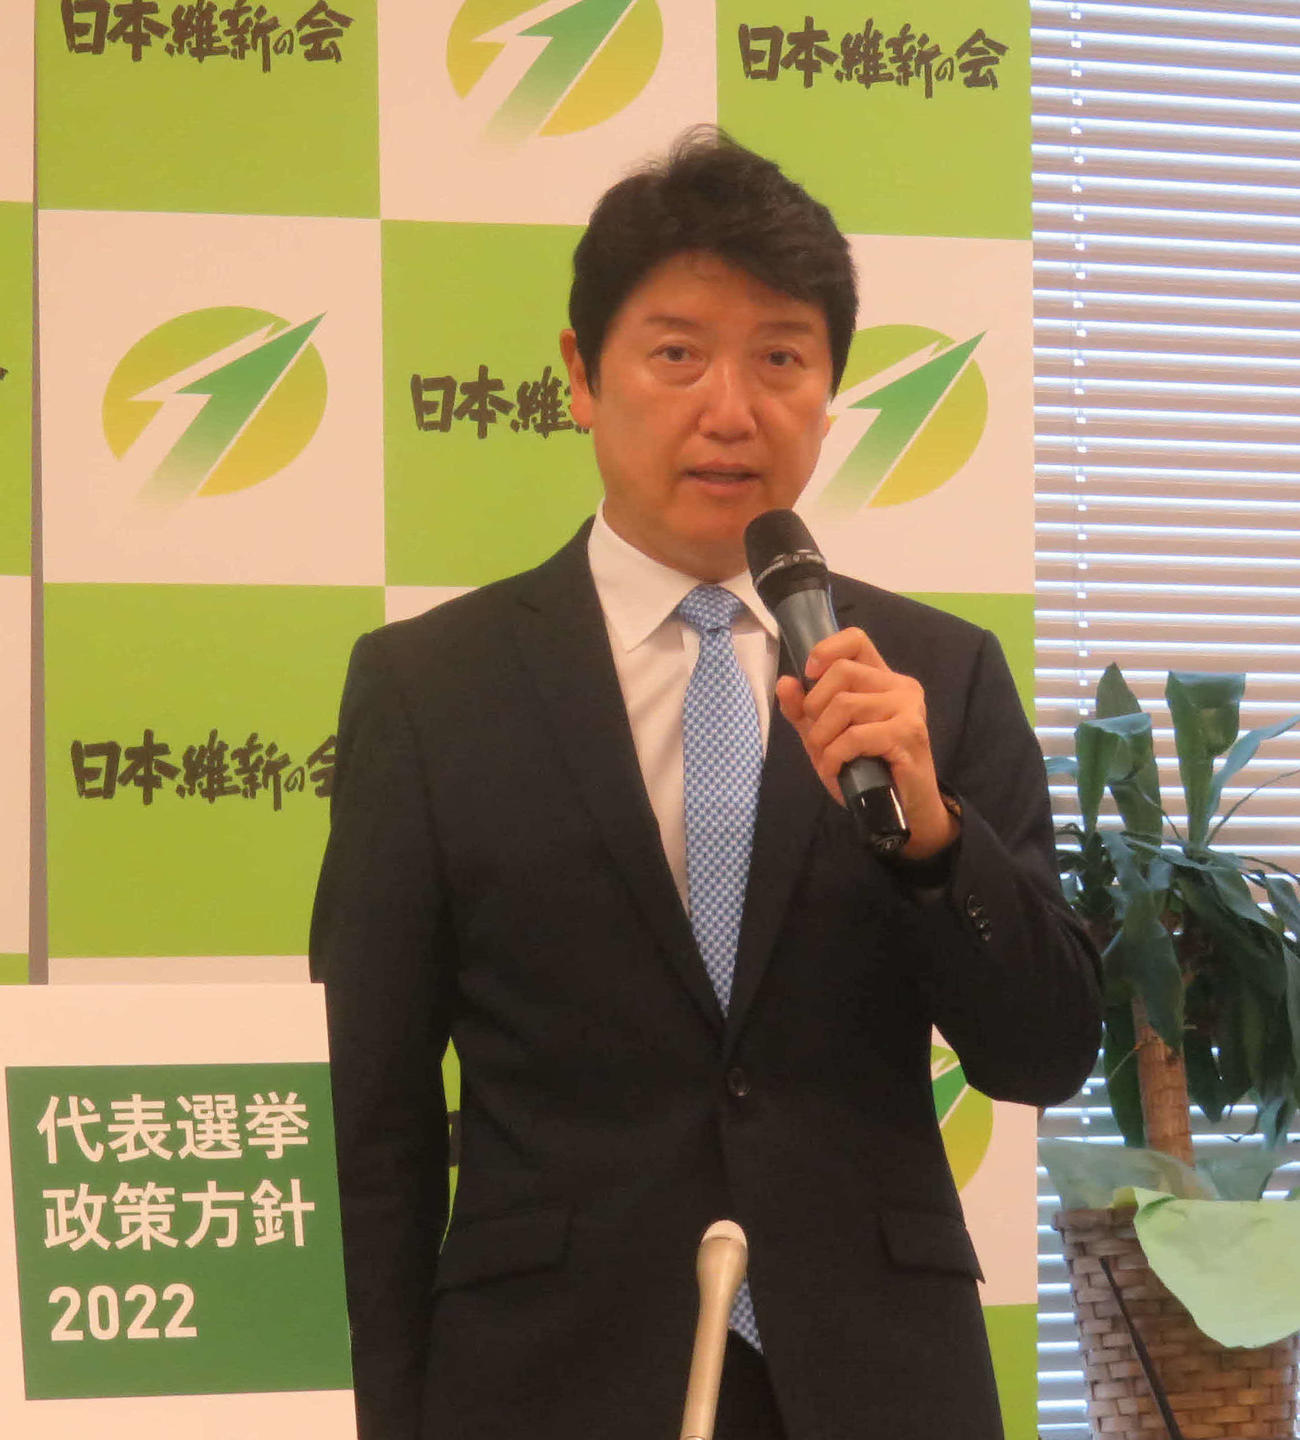 日本維新の会の代表選に立候補を表明した足立康史衆院議員（撮影・大上悟）